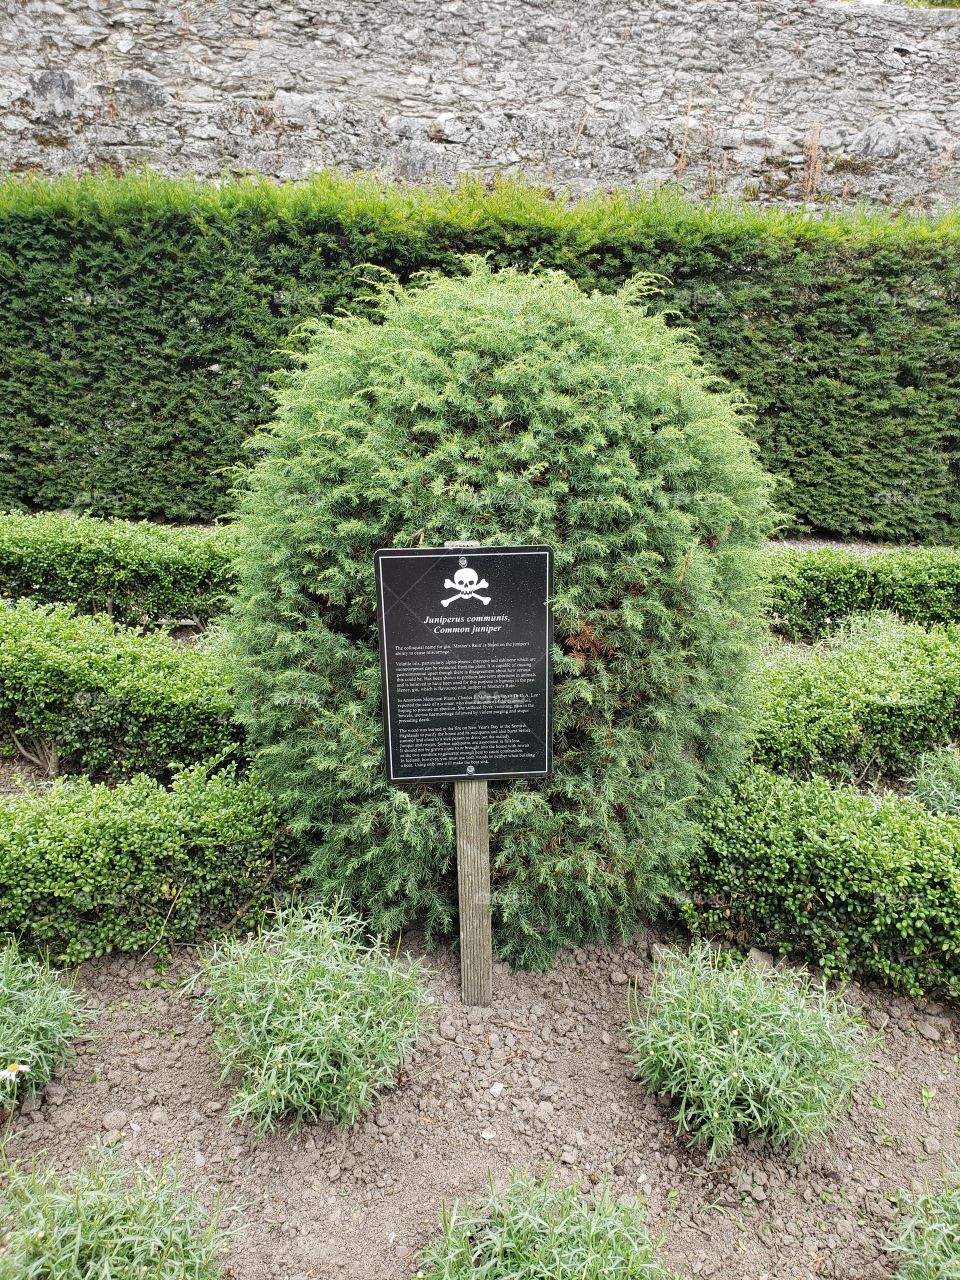 Poisonous shrub at poison gardens, Blarney Castle, Ireland